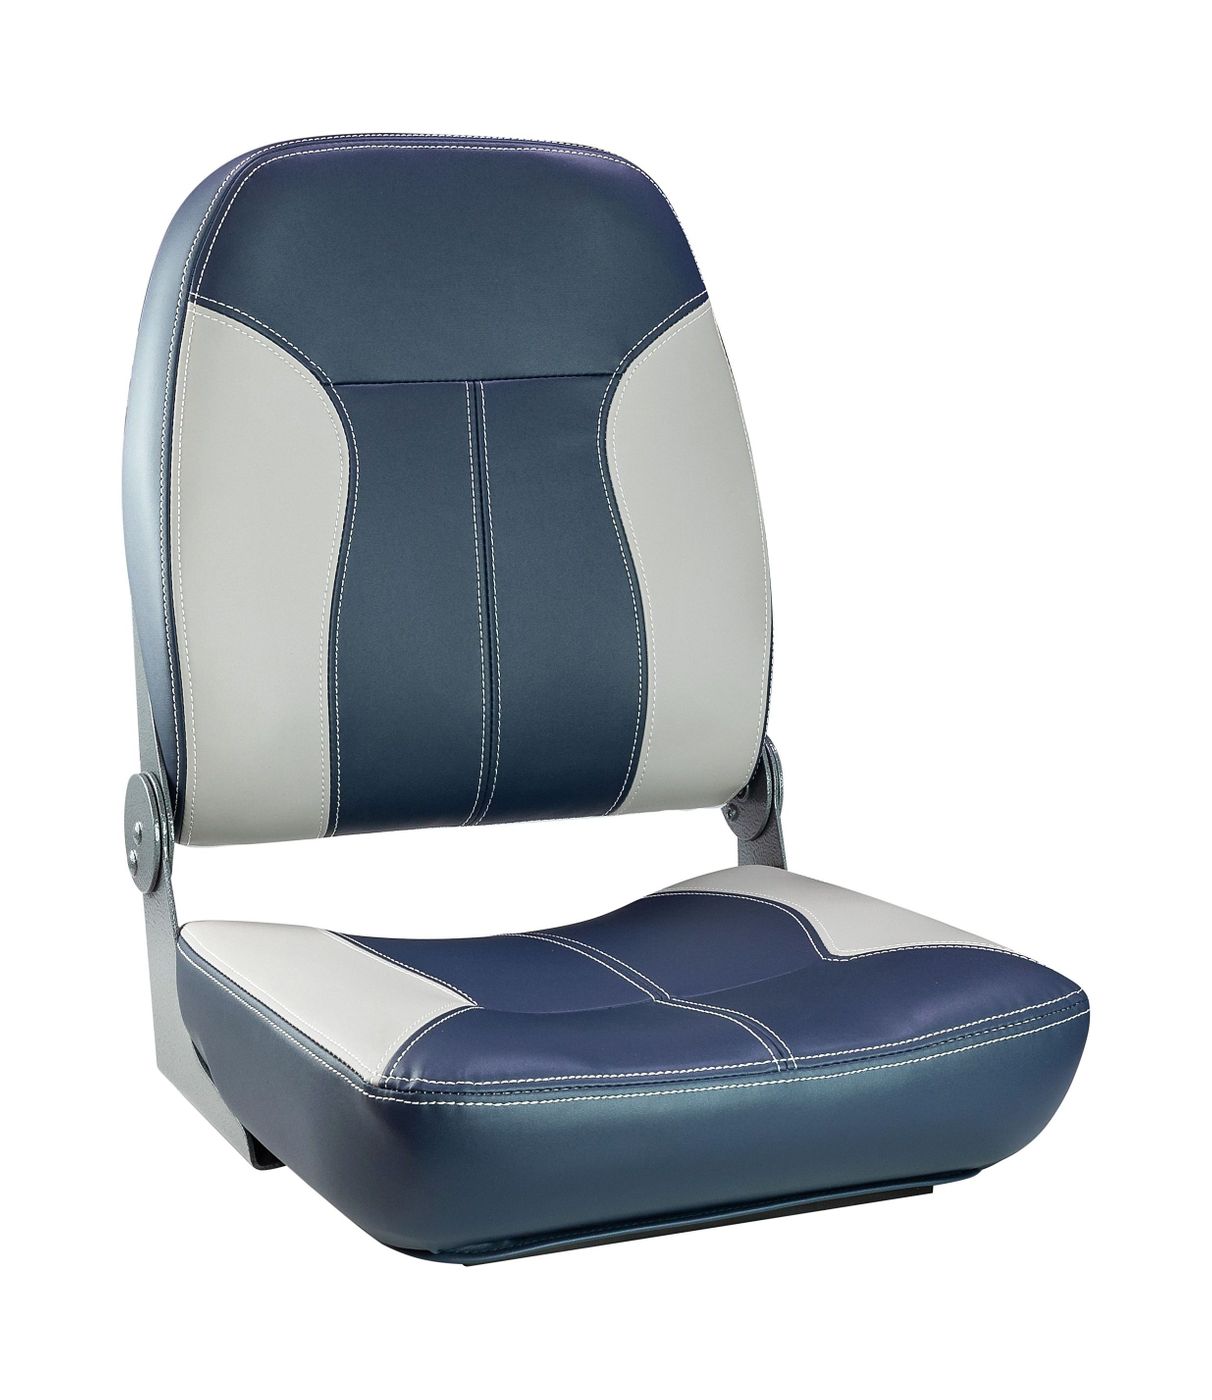 Кресло складное мягкое SPORT с высокой спинкой, синий/серый 1040513 кресло складное мягкое sport с высокой спинкой синий серый 1040513